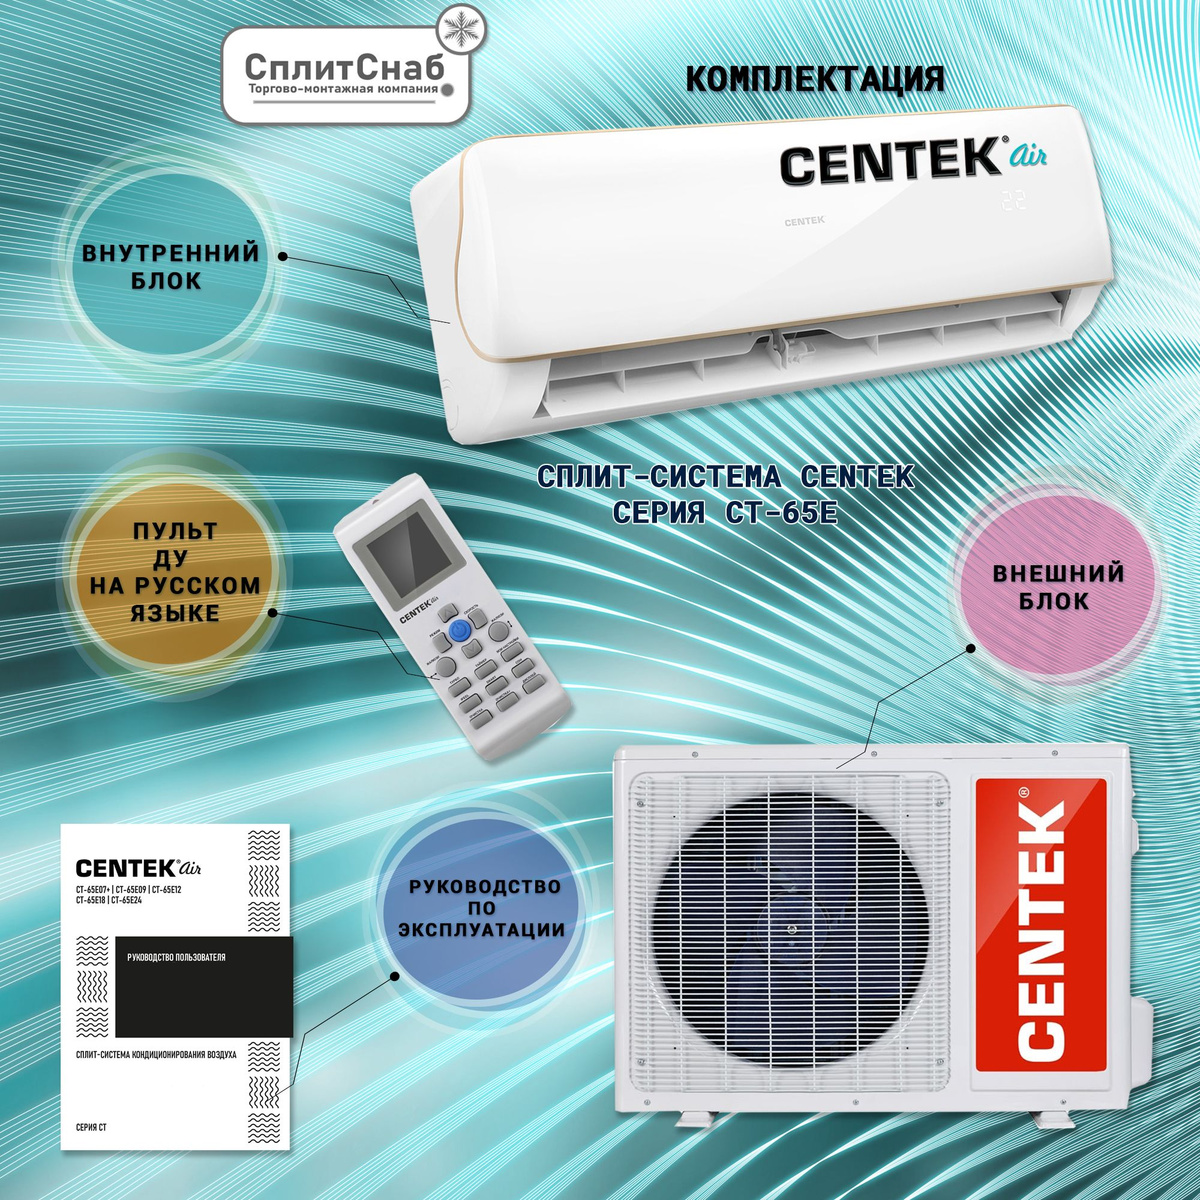 Благодаря грамотному проектированию всех комплектующих сплит-систем Centek-Air, мы добились максимально тихой работы для нашей продукции. Наши кондиционеры не смогут потревожить даже самый чуткий сон.